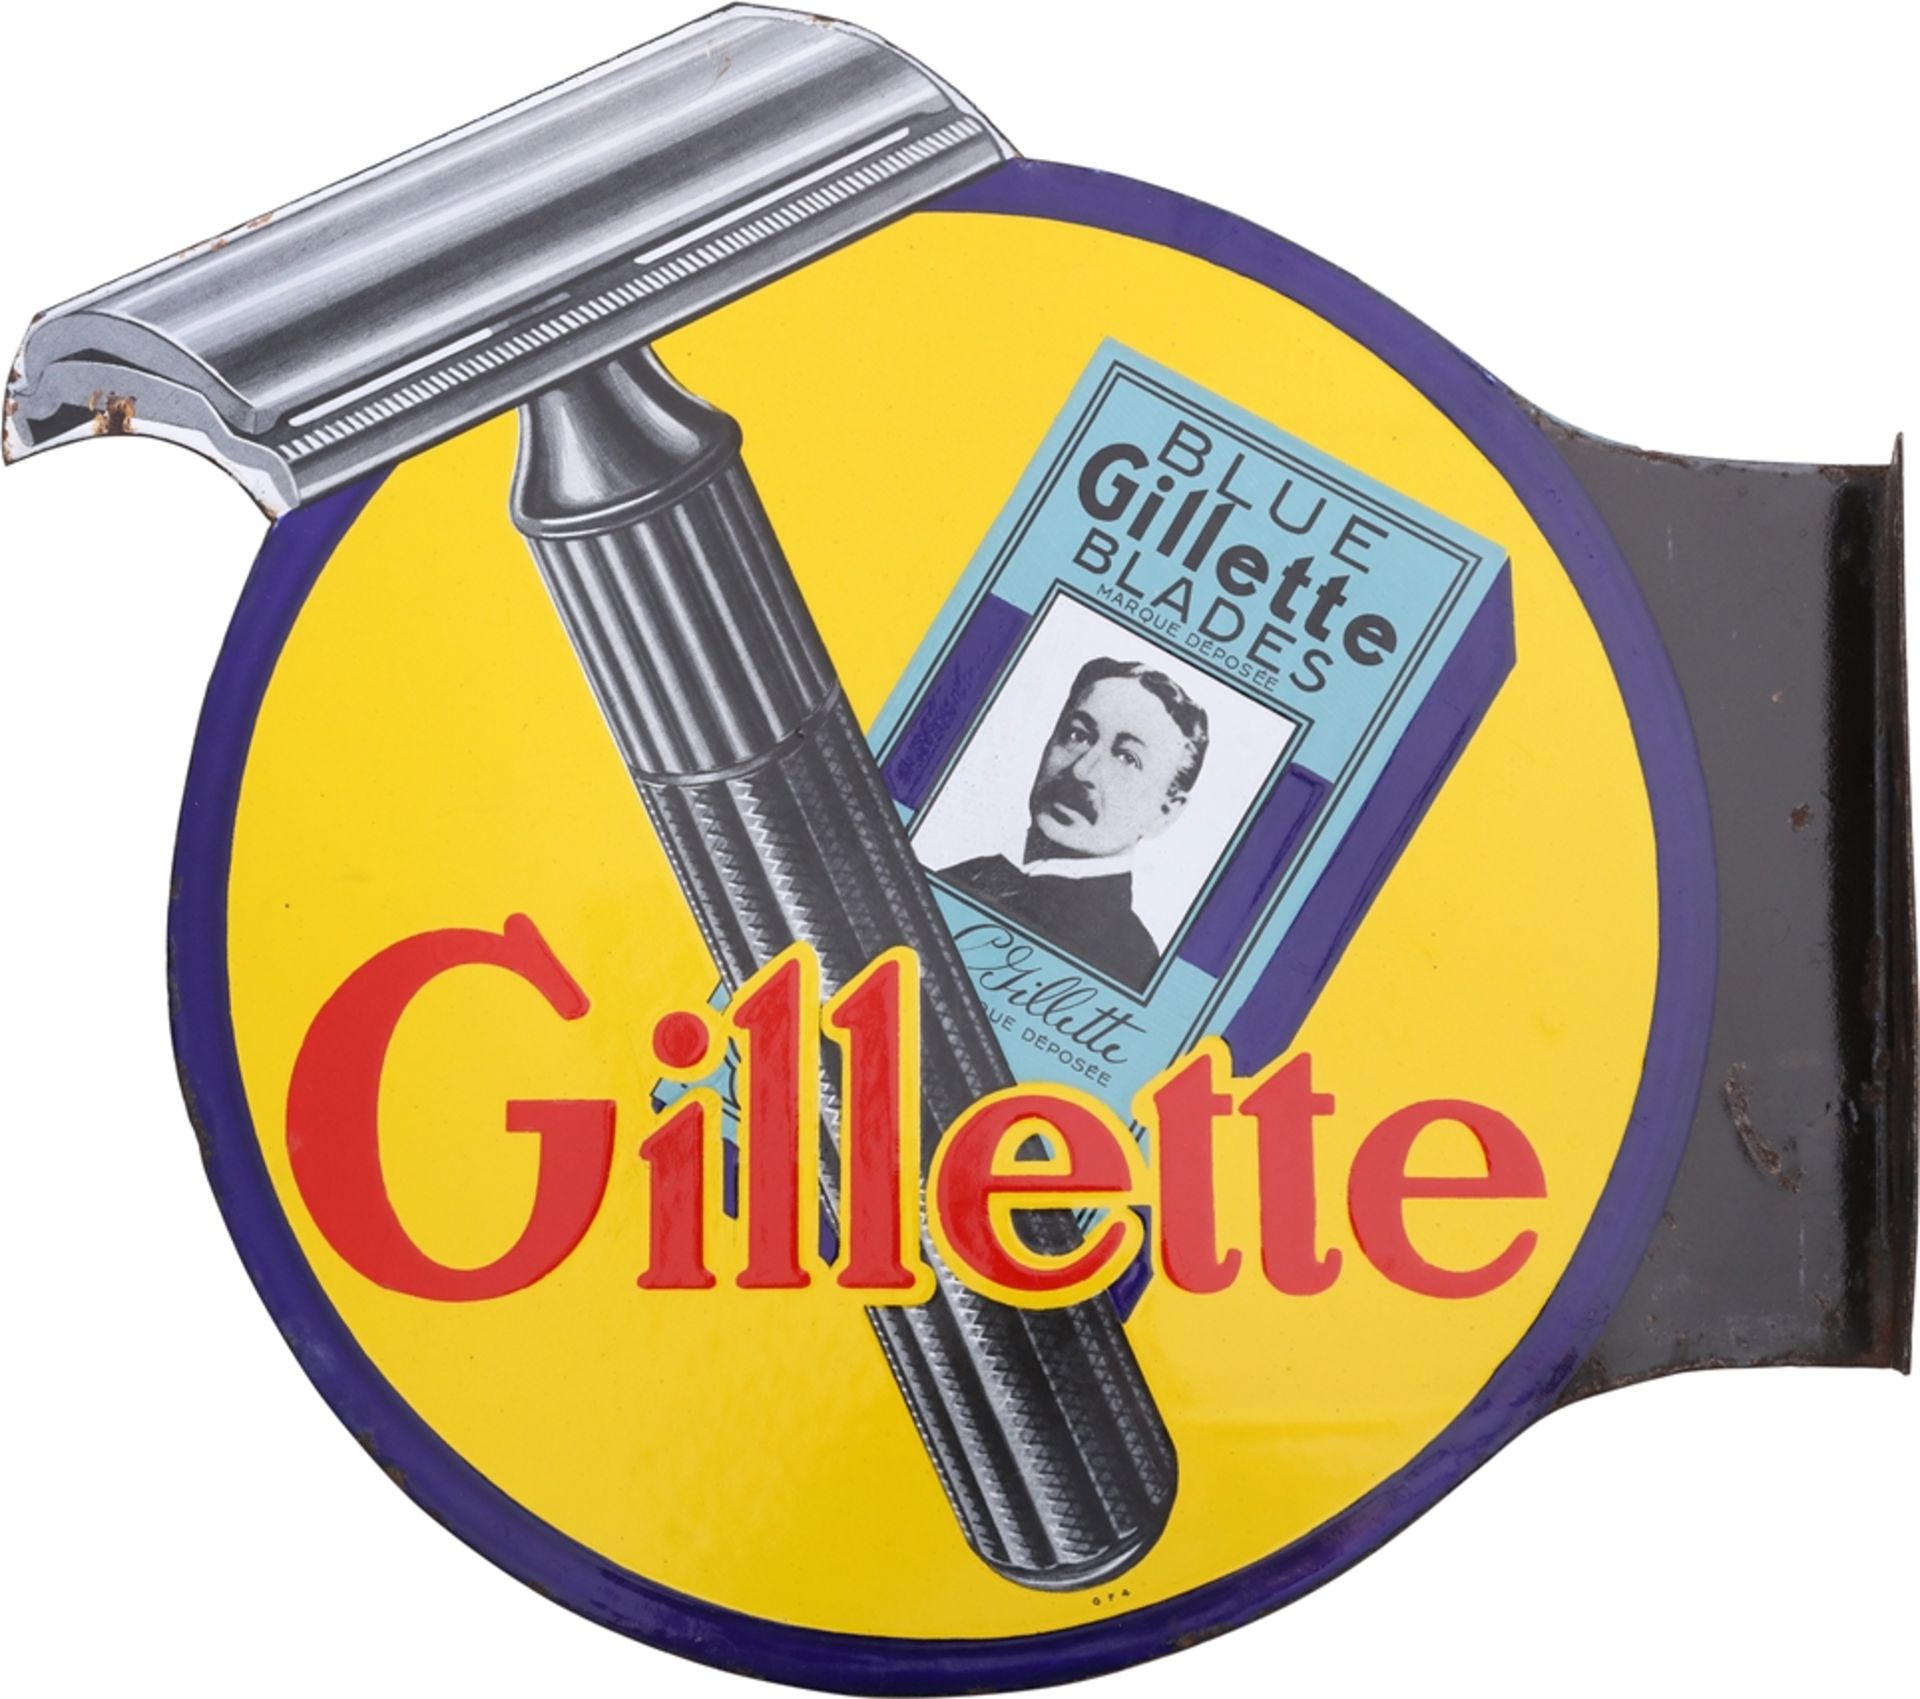 Gillette Blue Blades enamel sign, France, around 1930